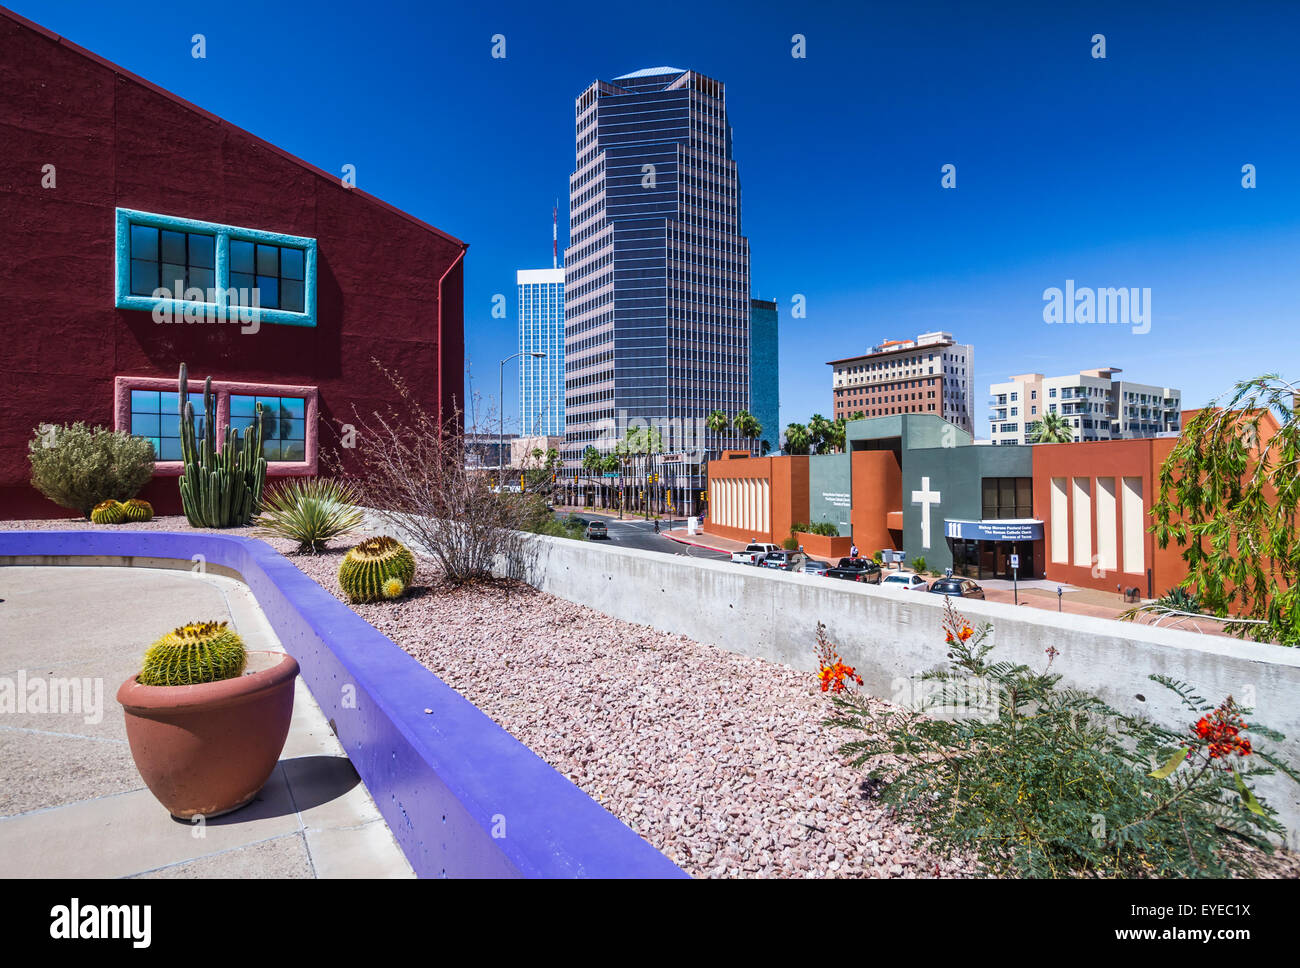 La colorée La Placita village complexe de bureaux dans le centre-ville de Tucson, Arizona, USA. Banque D'Images